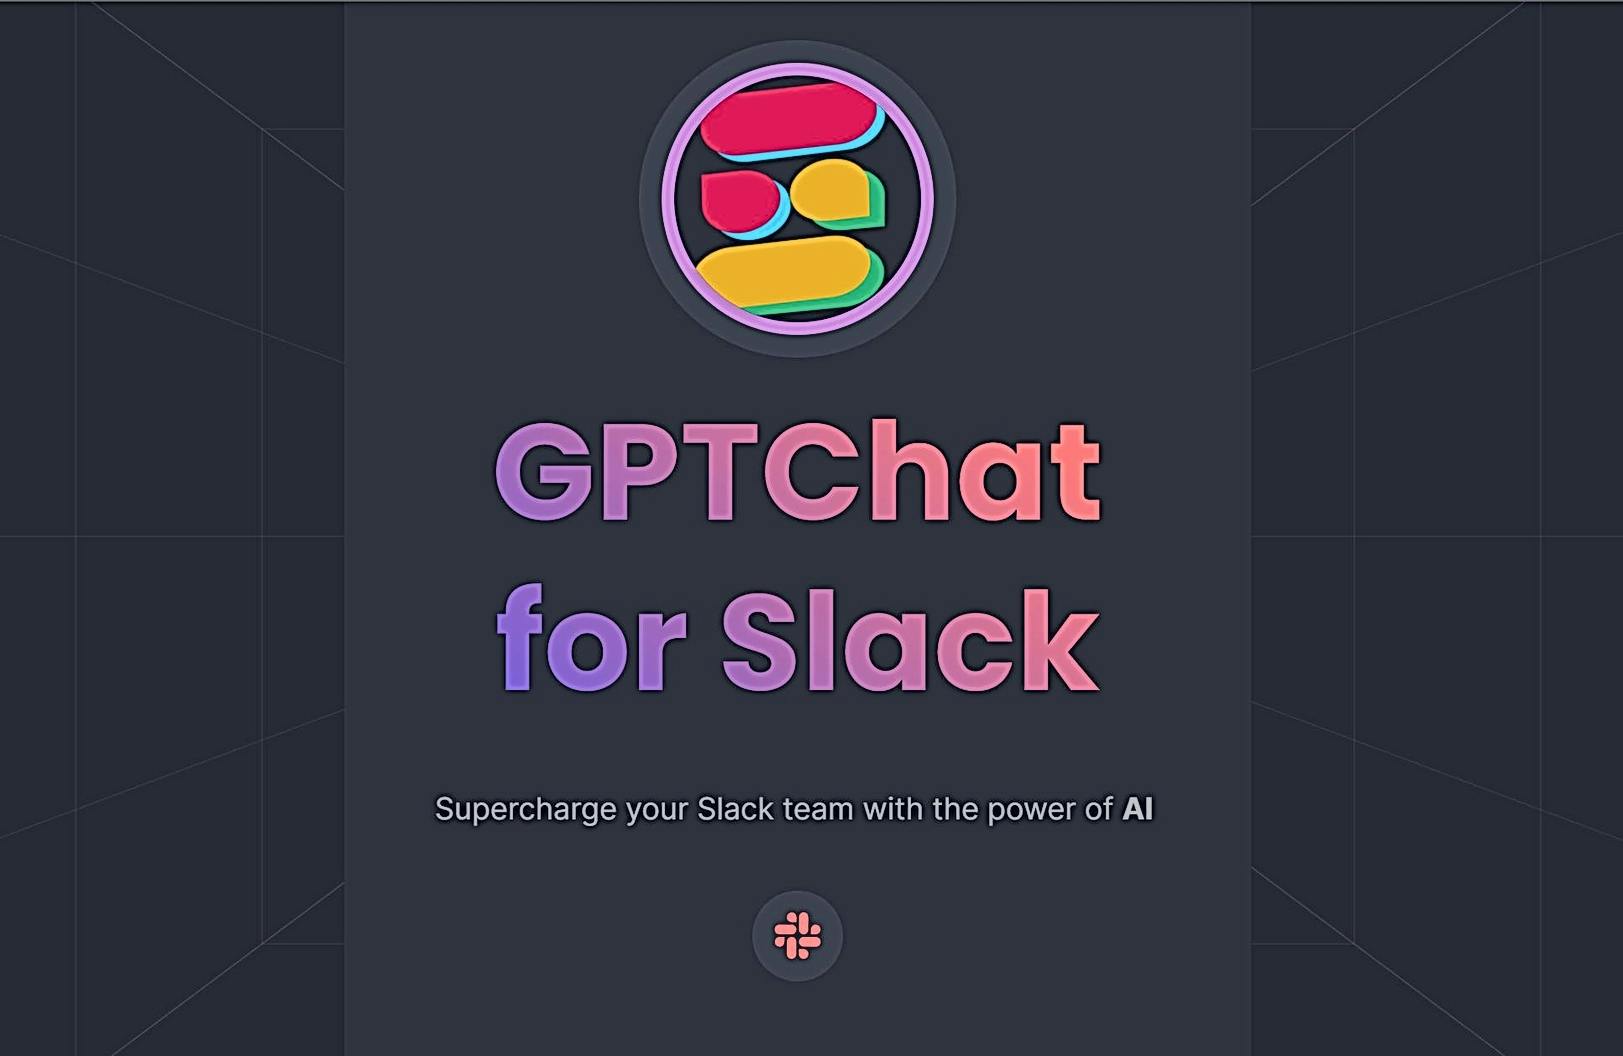 GPTChat for Slack featured